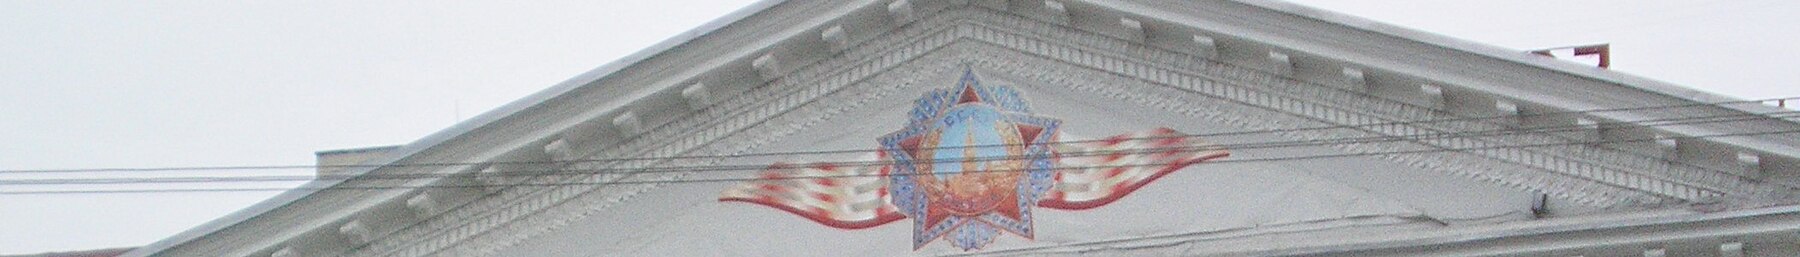 Belarus banner 1.jpg